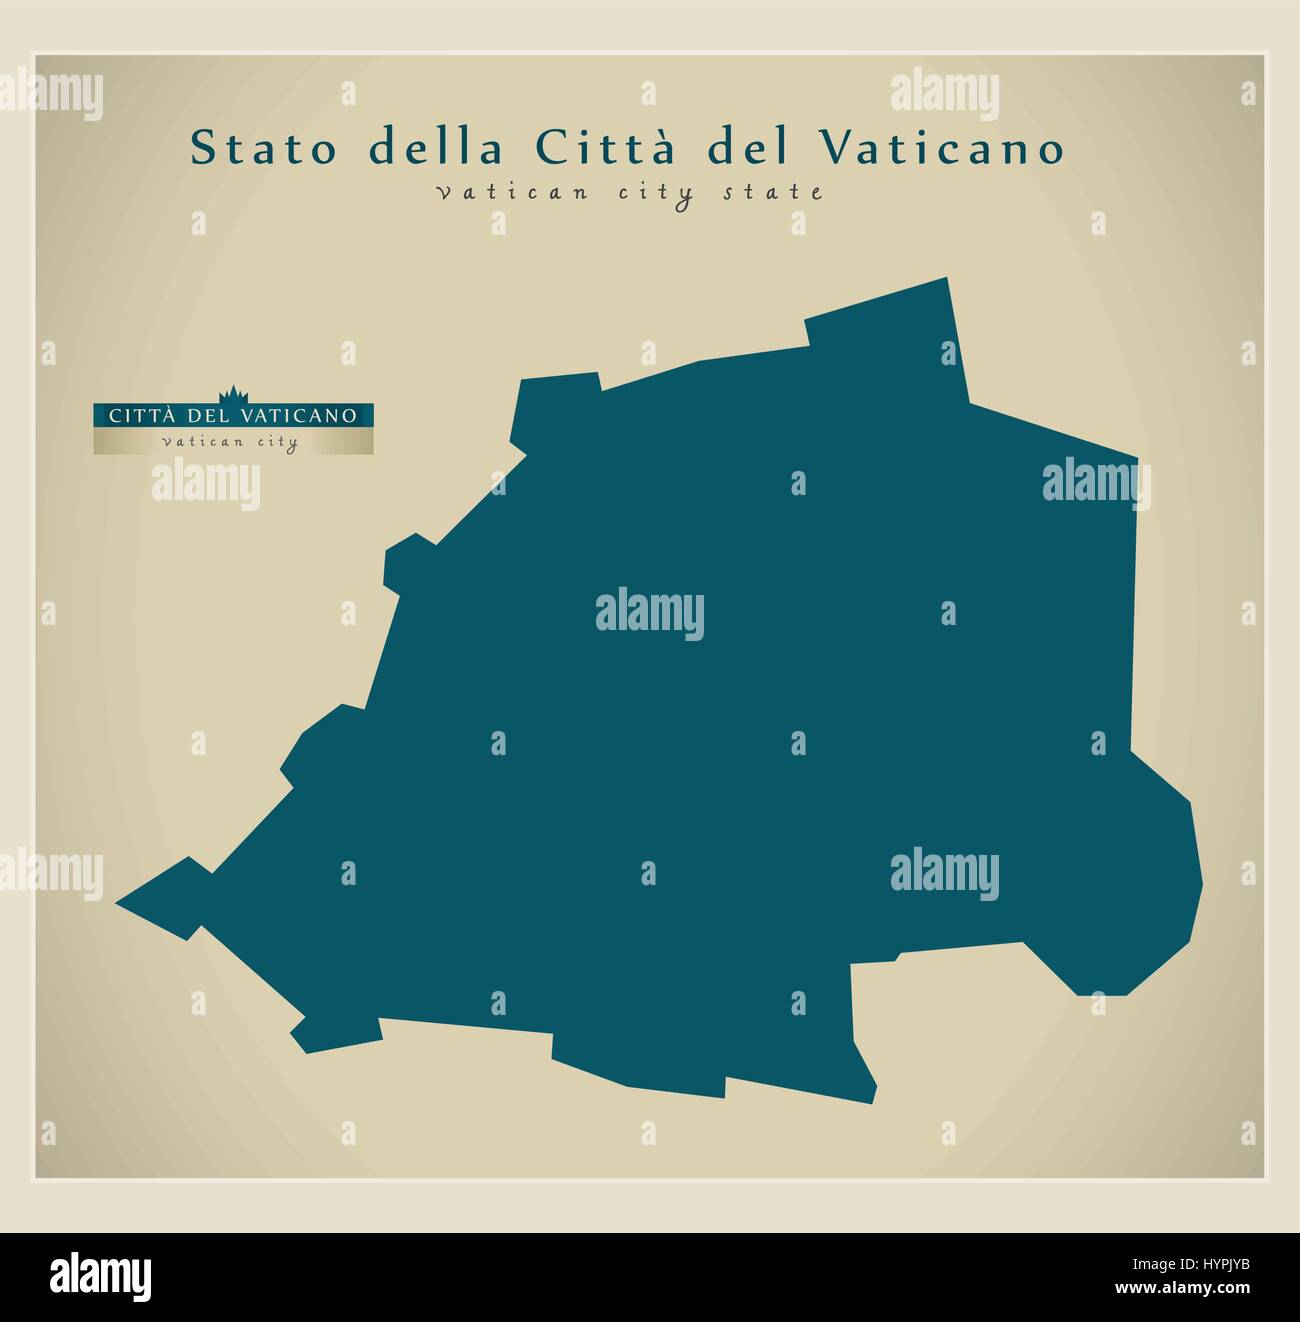 Mappa moderno - Stato della Città del Vaticano VA Illustrazione Vettoriale